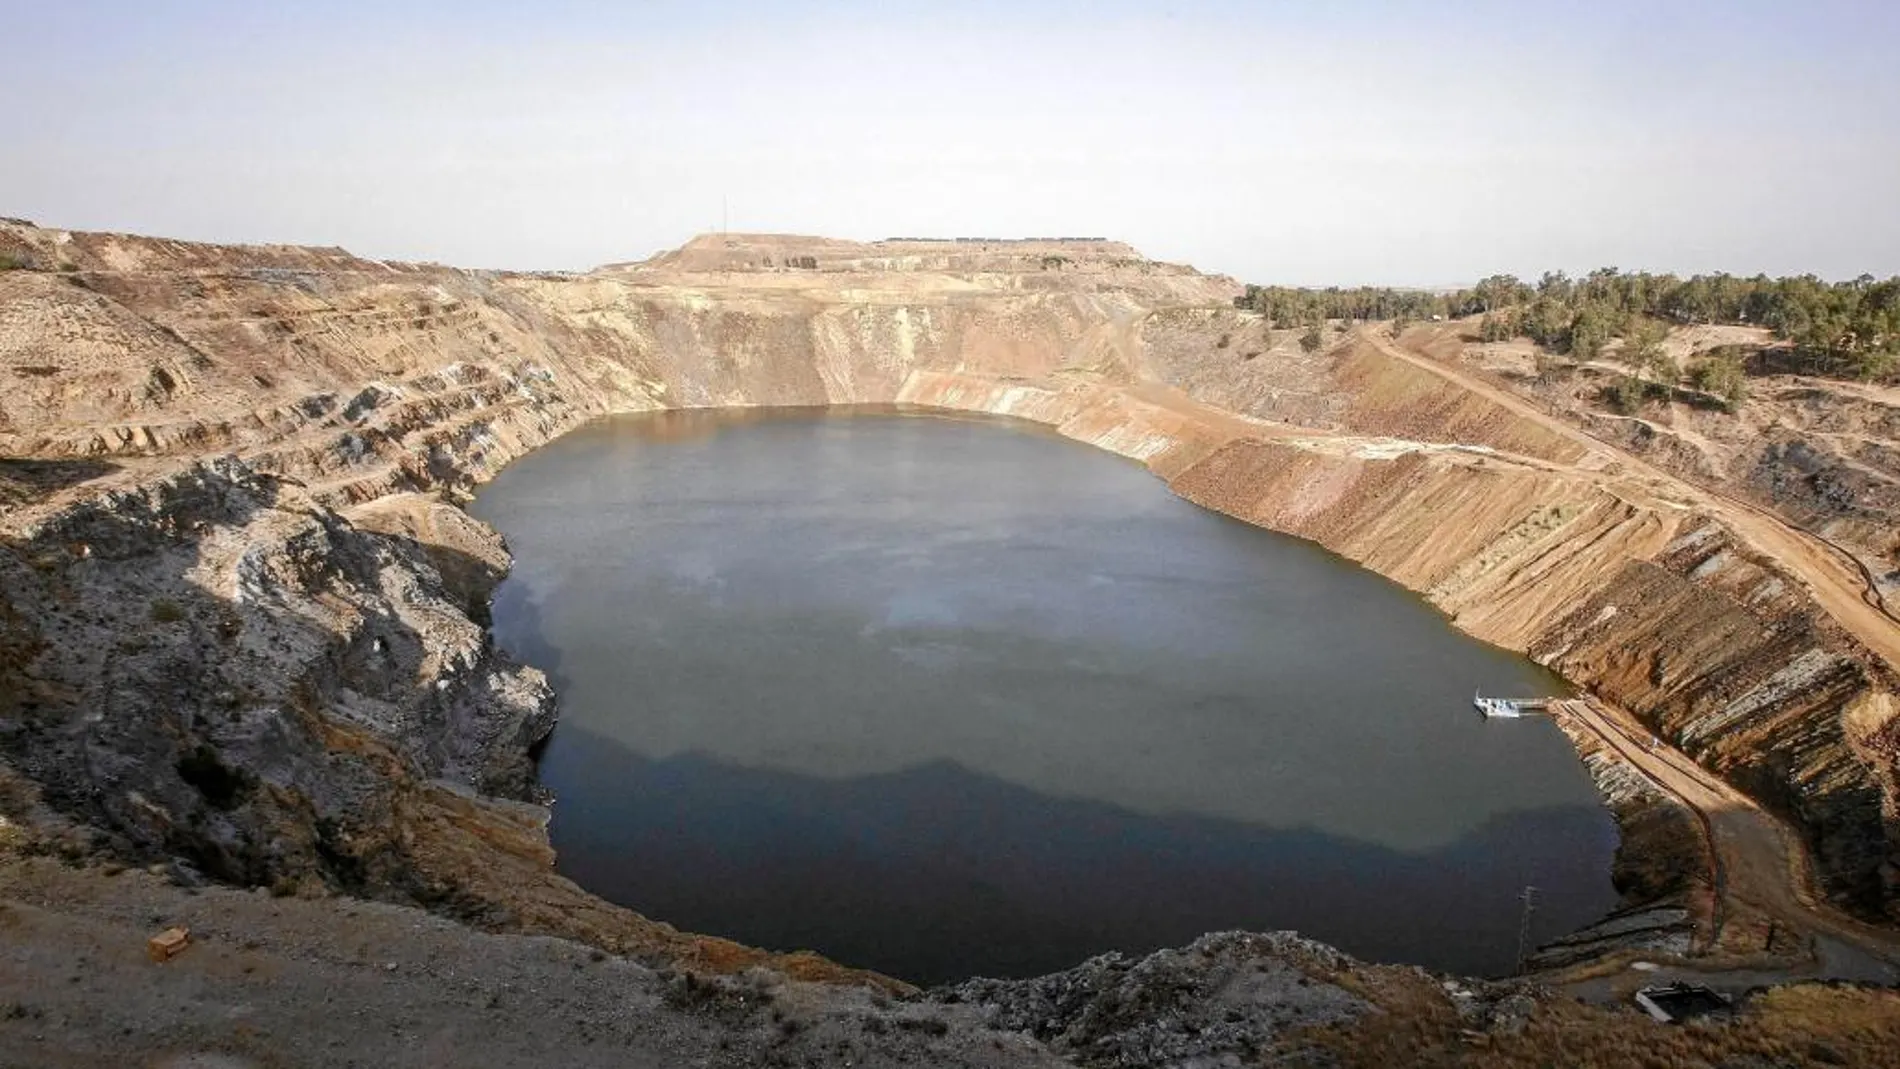 Vista de la mina de Aznalcóllar, envuelta en una causa judicial por su adjudicación.